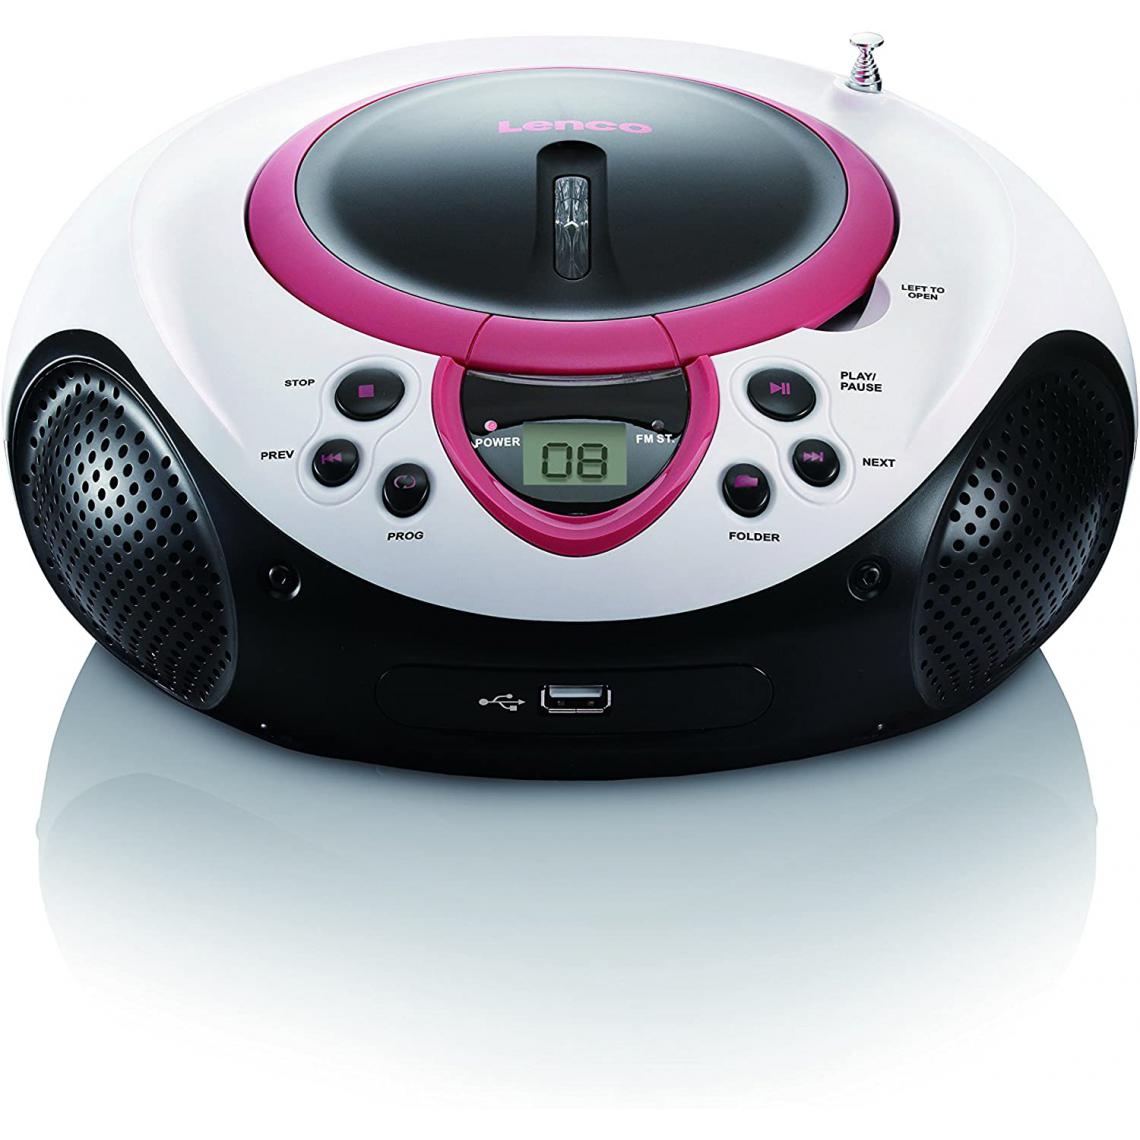 Lenco - mini chaine hifi stéréo FM LECTEUR CD USB MP3 piles ou secteur rose blanc noir - Chaînes Hifi